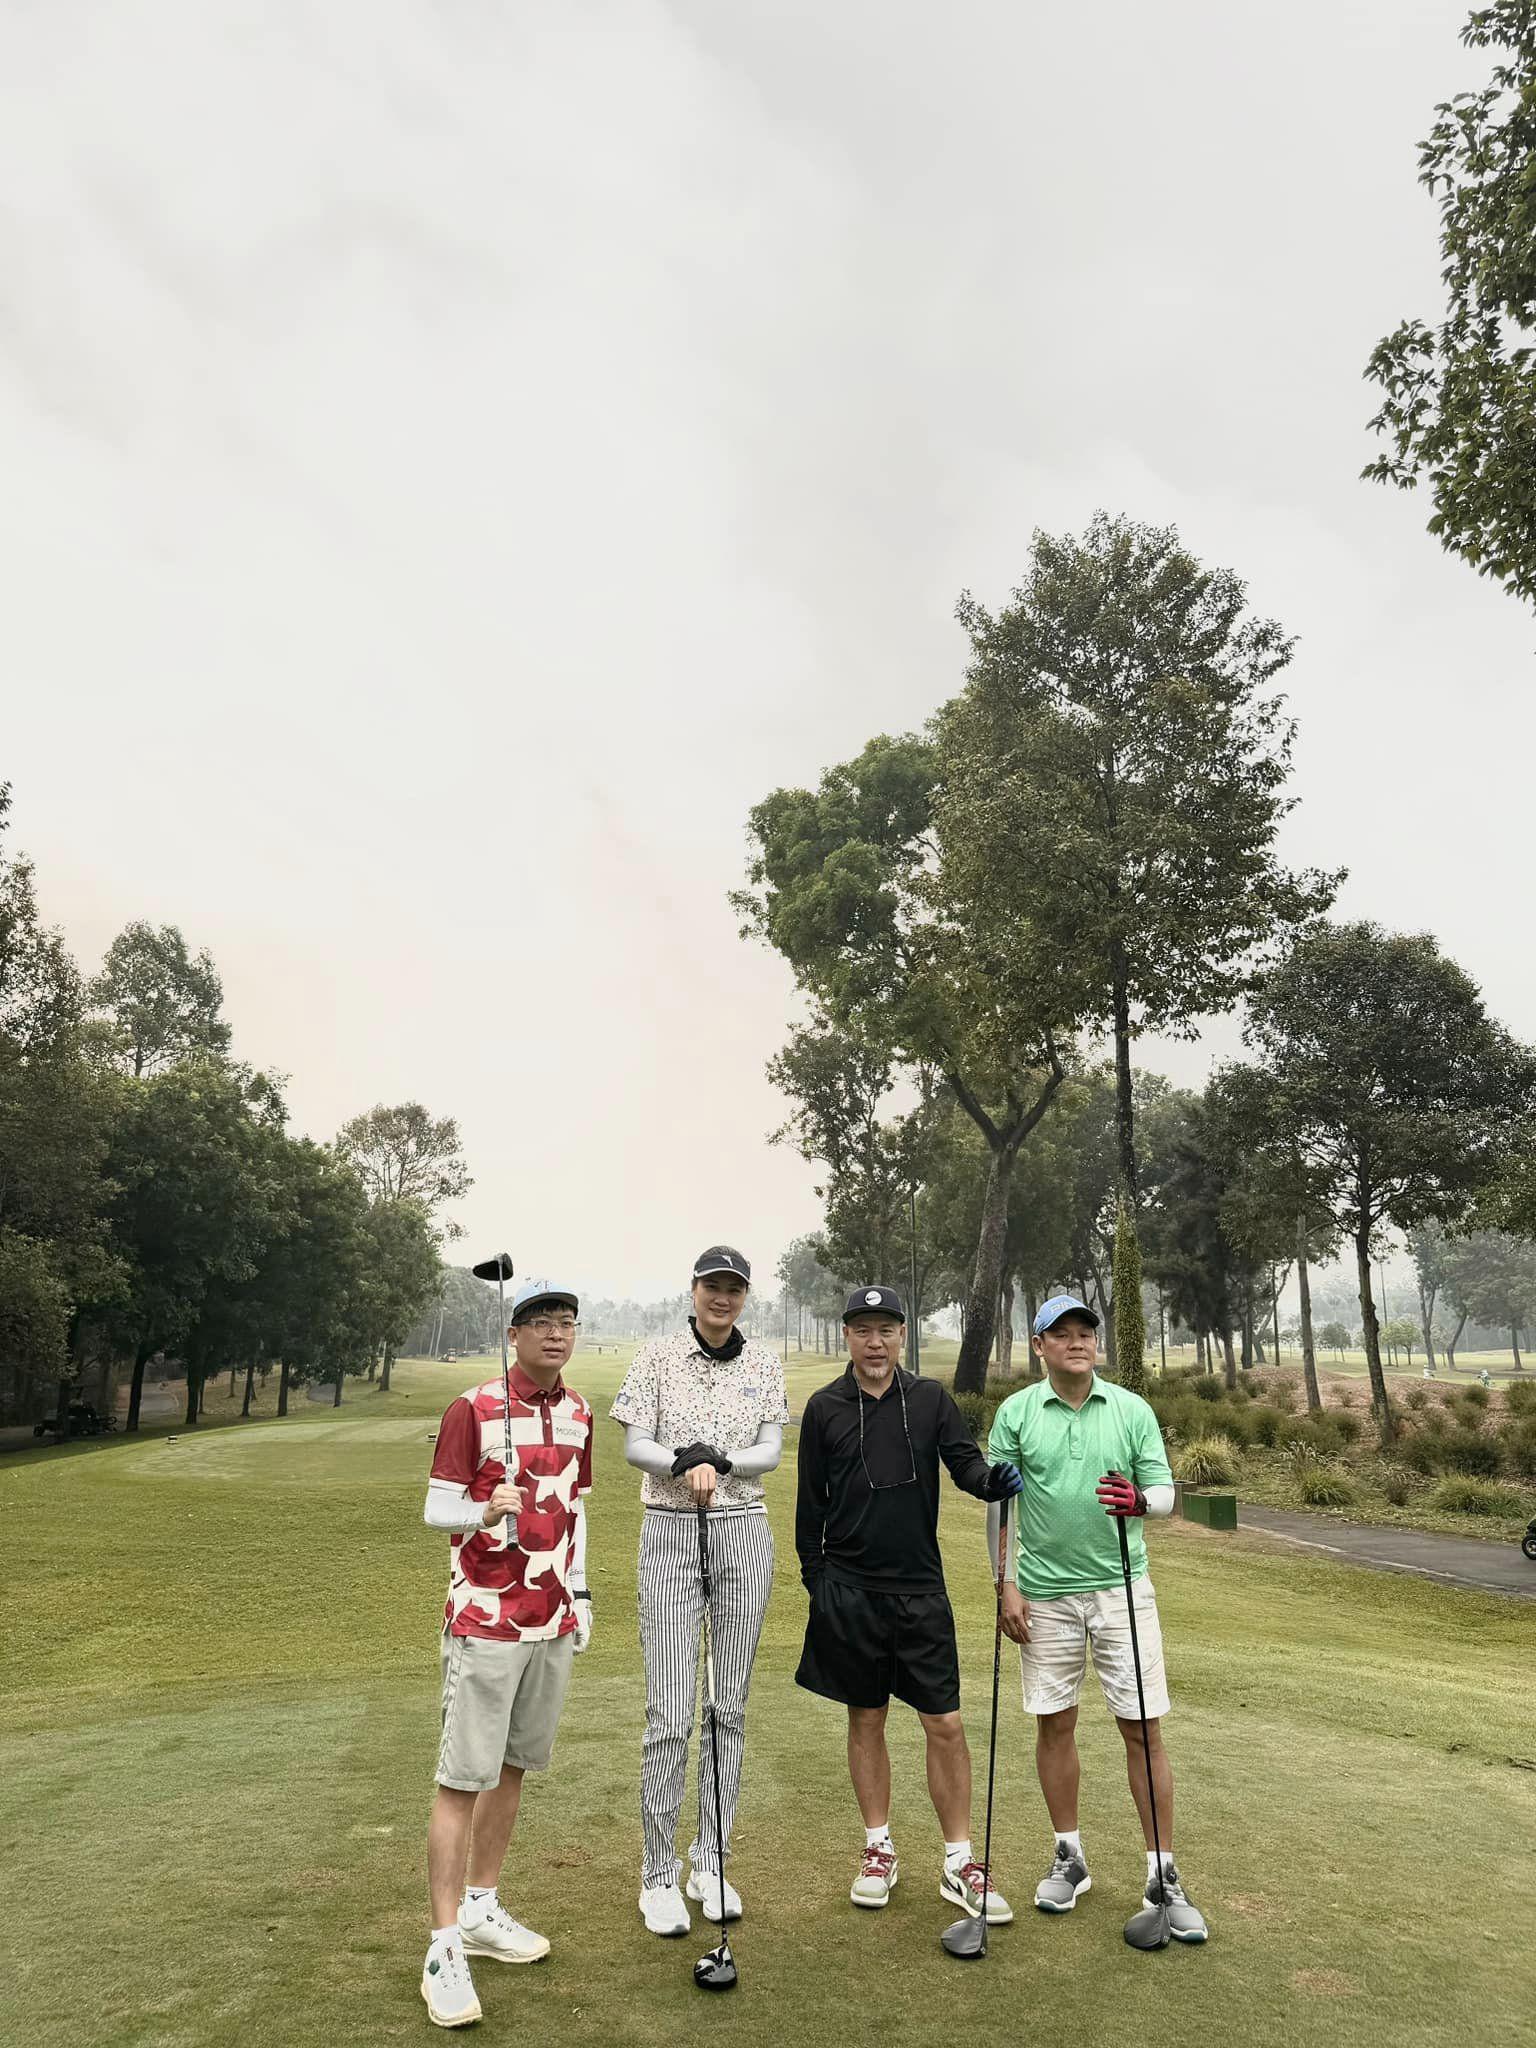 "Hoa khôi" Kim Huệ chăm tập golf sau khi giải nghệ, thân hình 1m82 "lấn át" cánh đàn ông